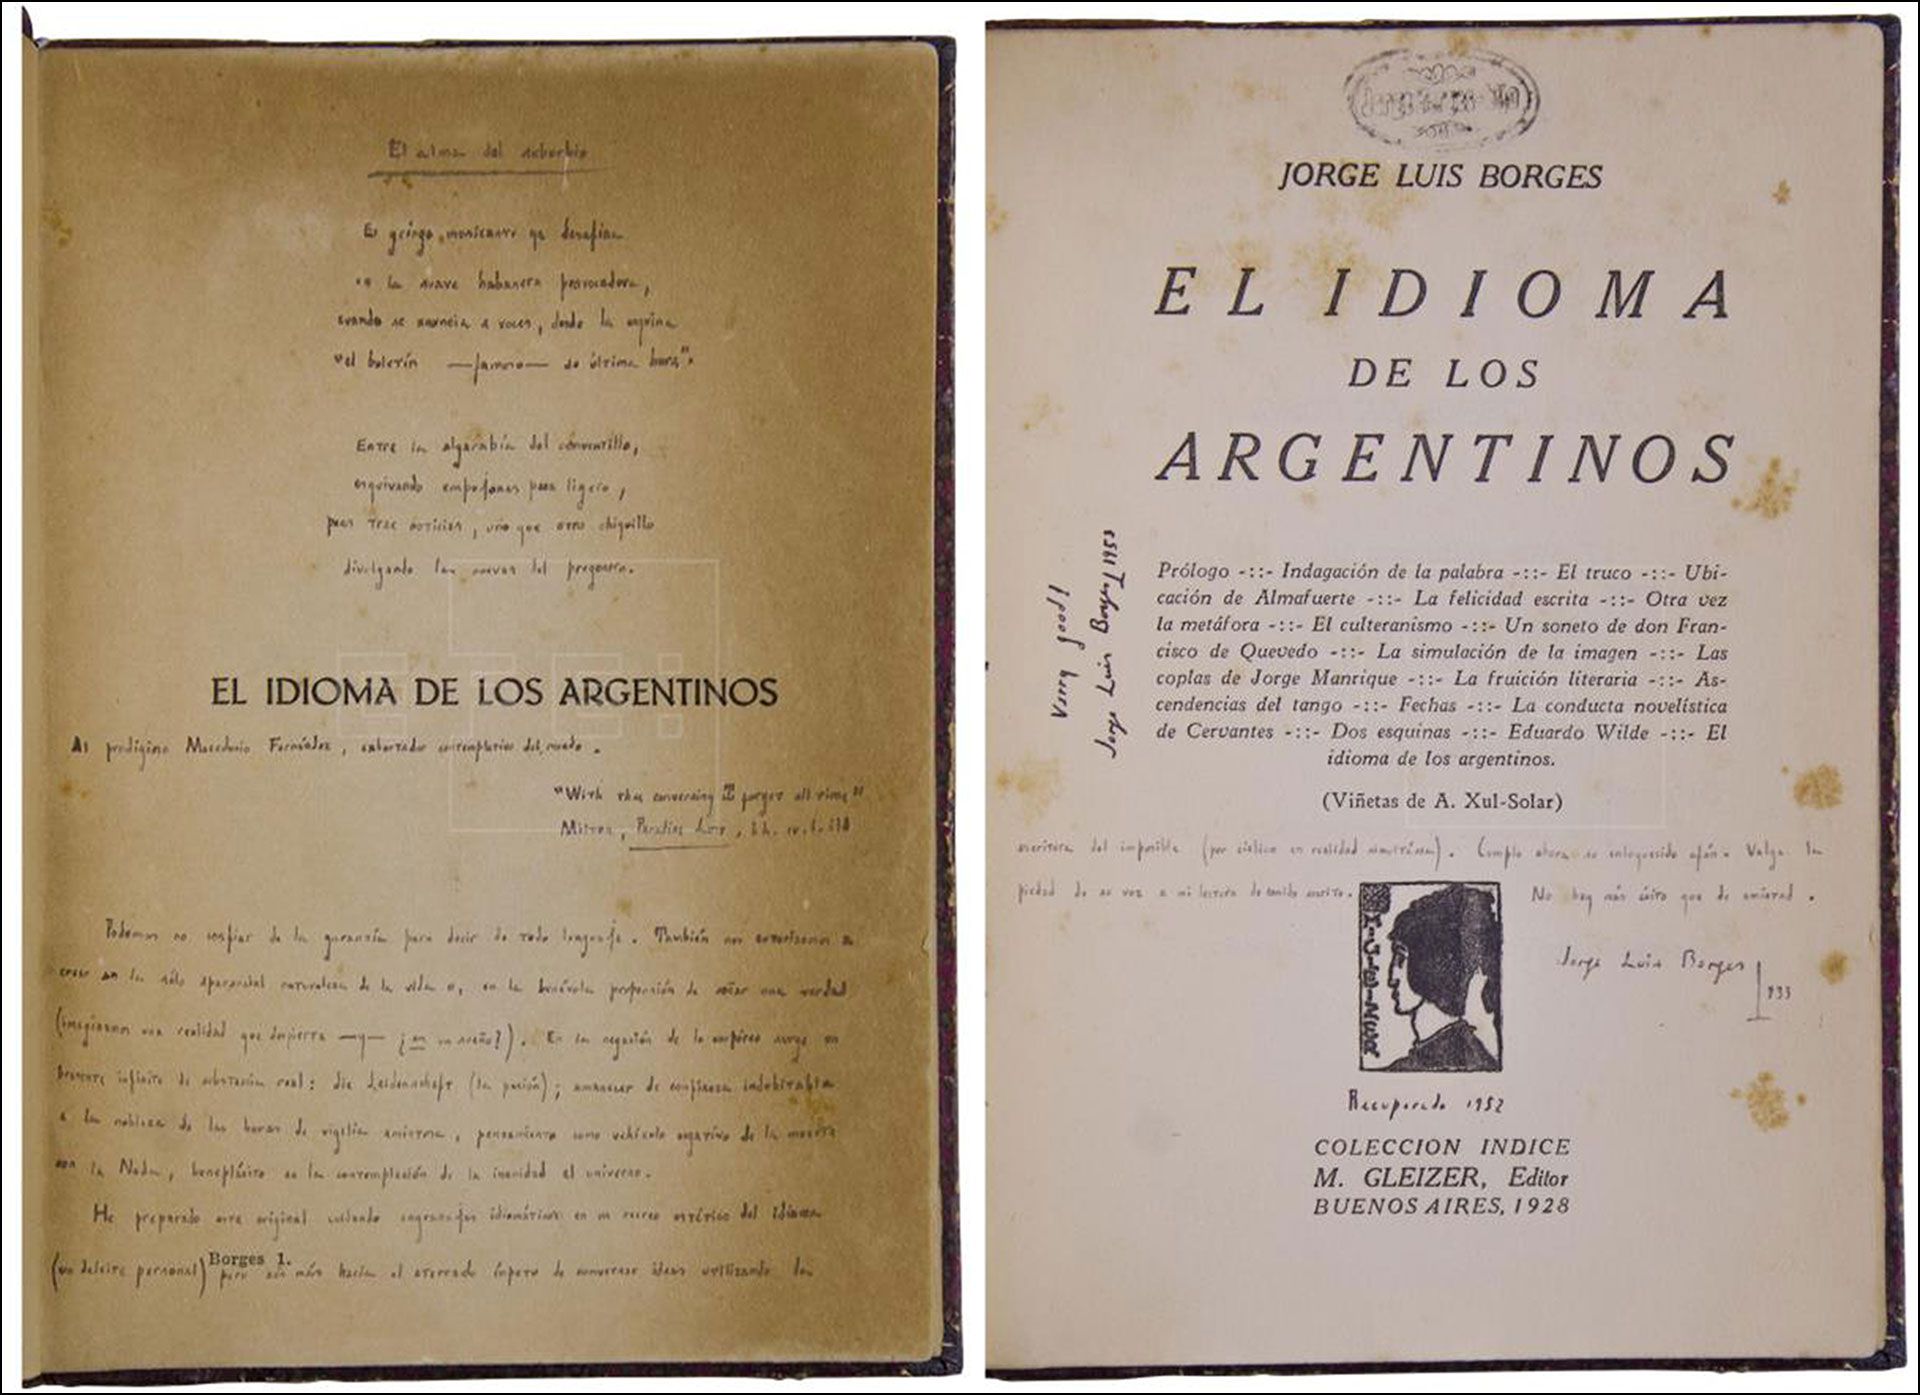 Primera edición de “El idioma de los argentinos” con correcciones a mano